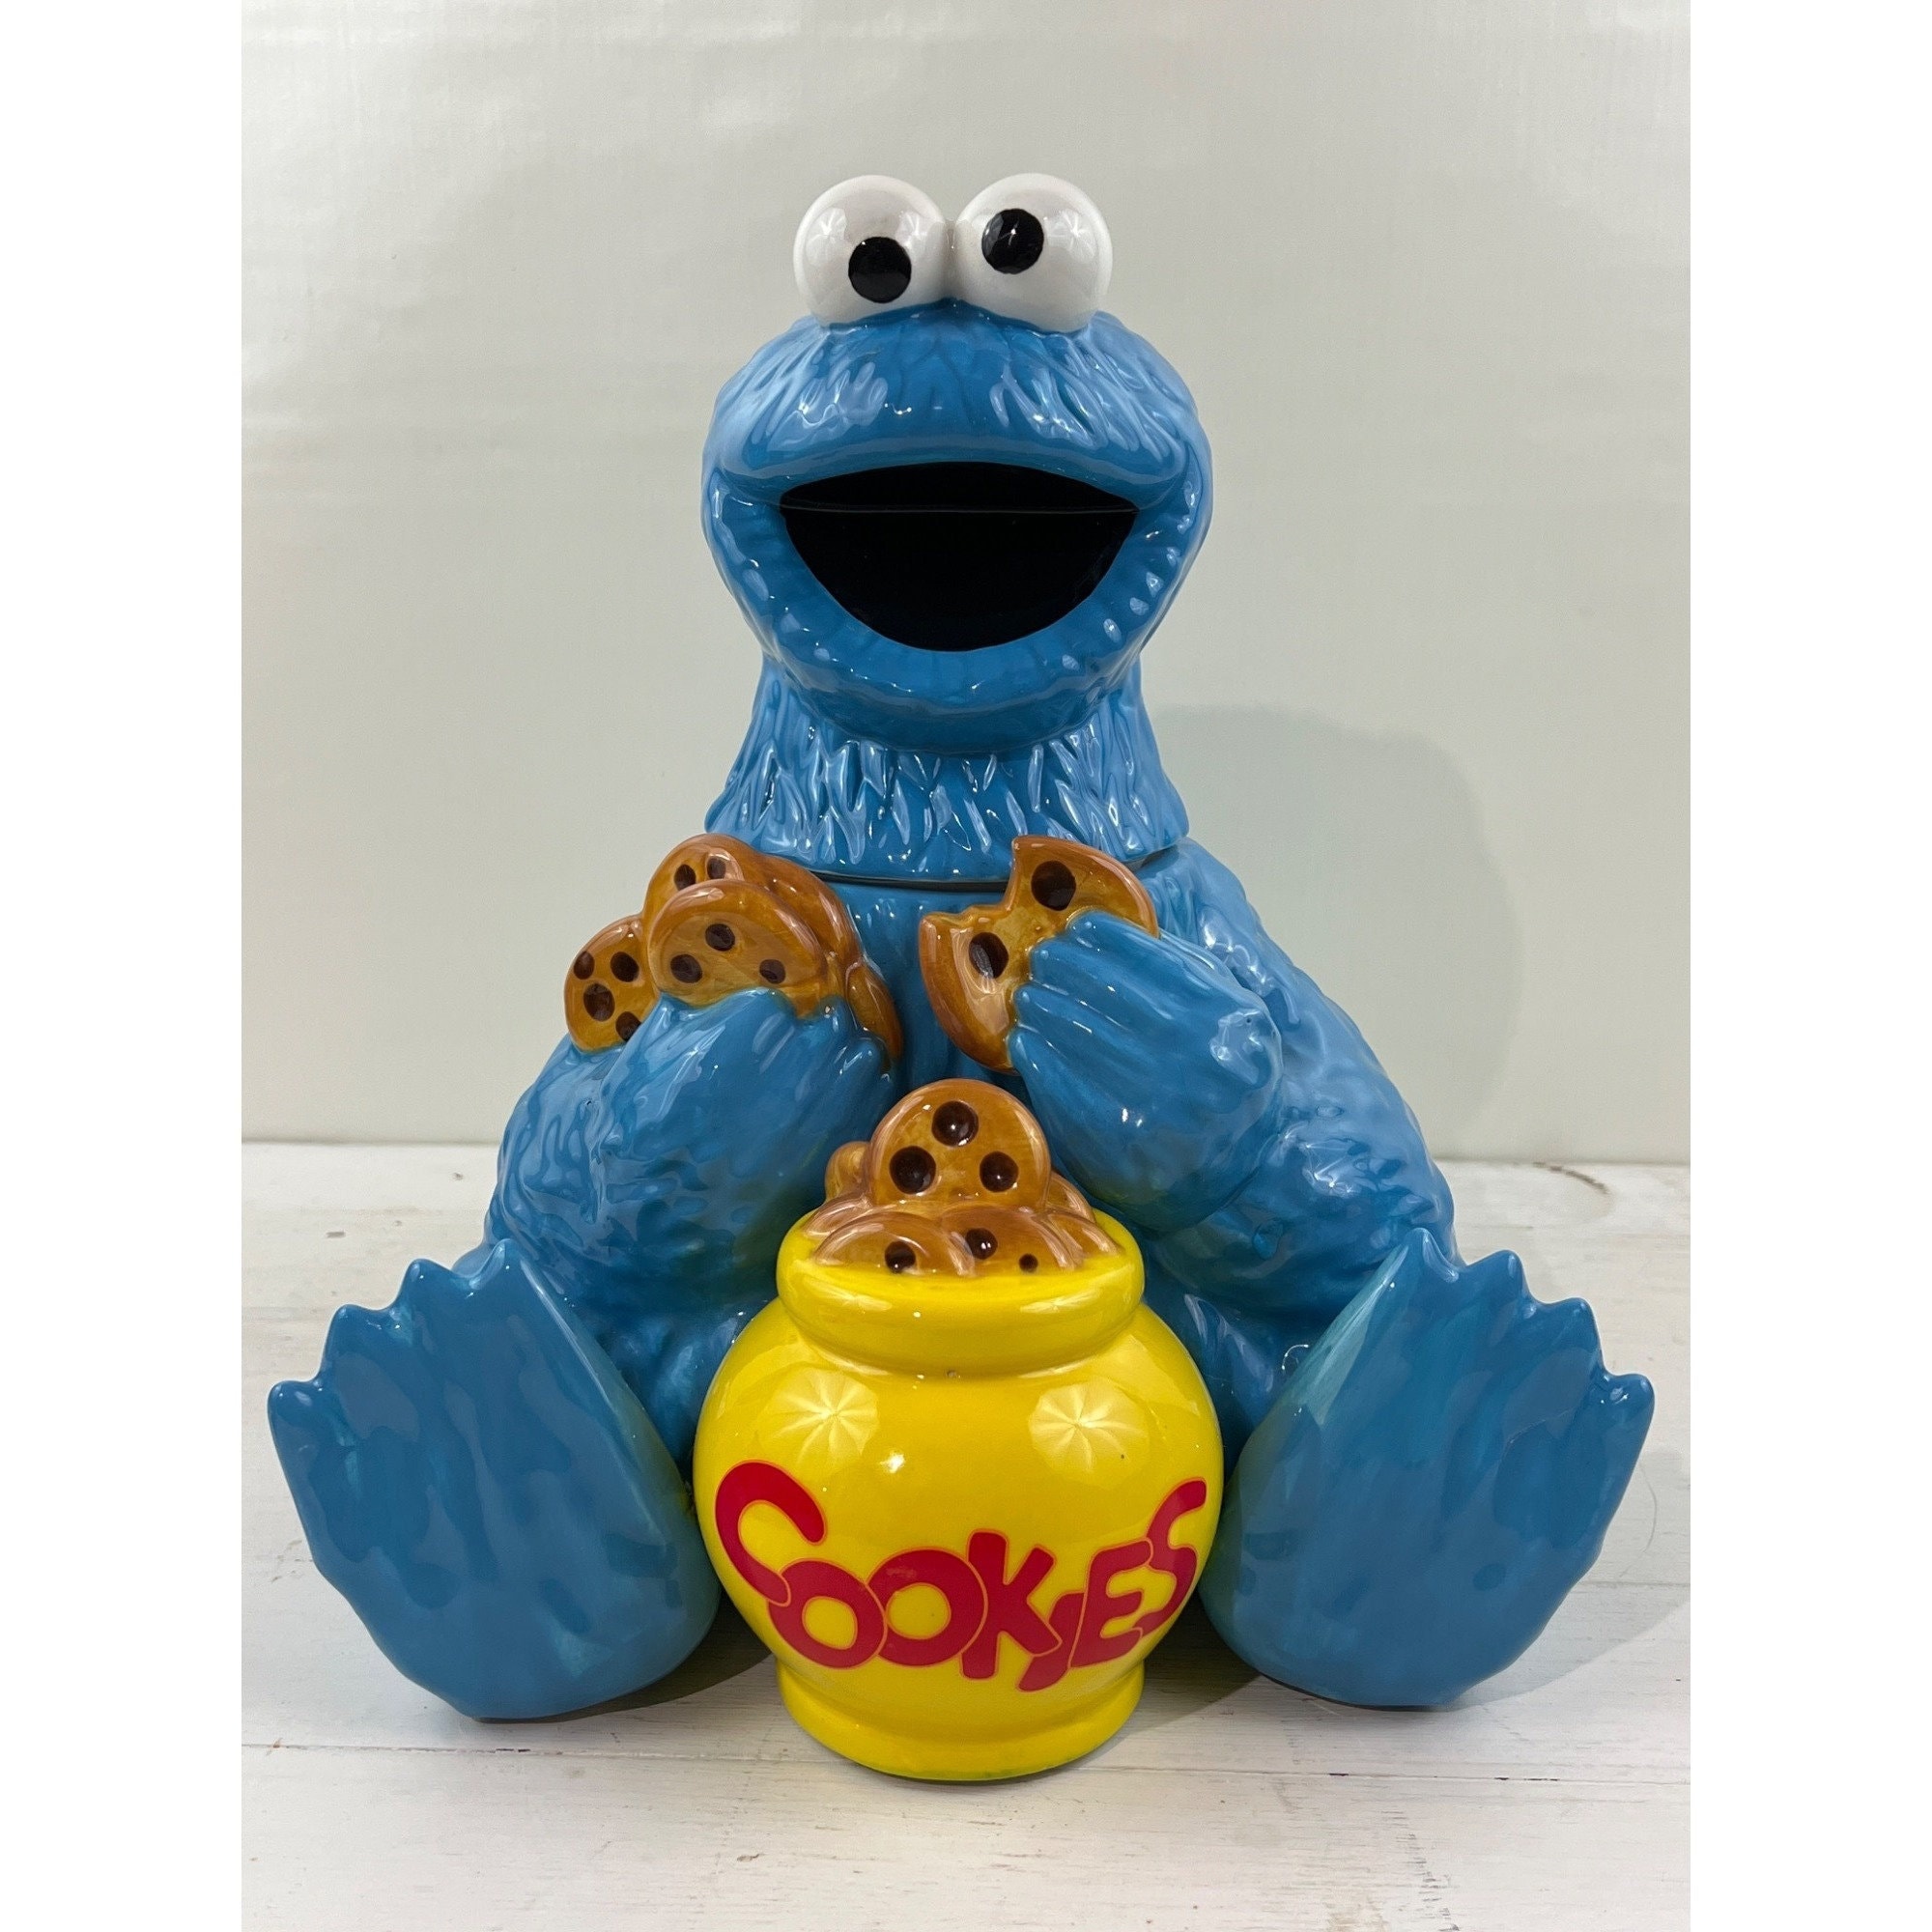 2020 - Cookie Monster Cookie Jar, by Sesame Workshop